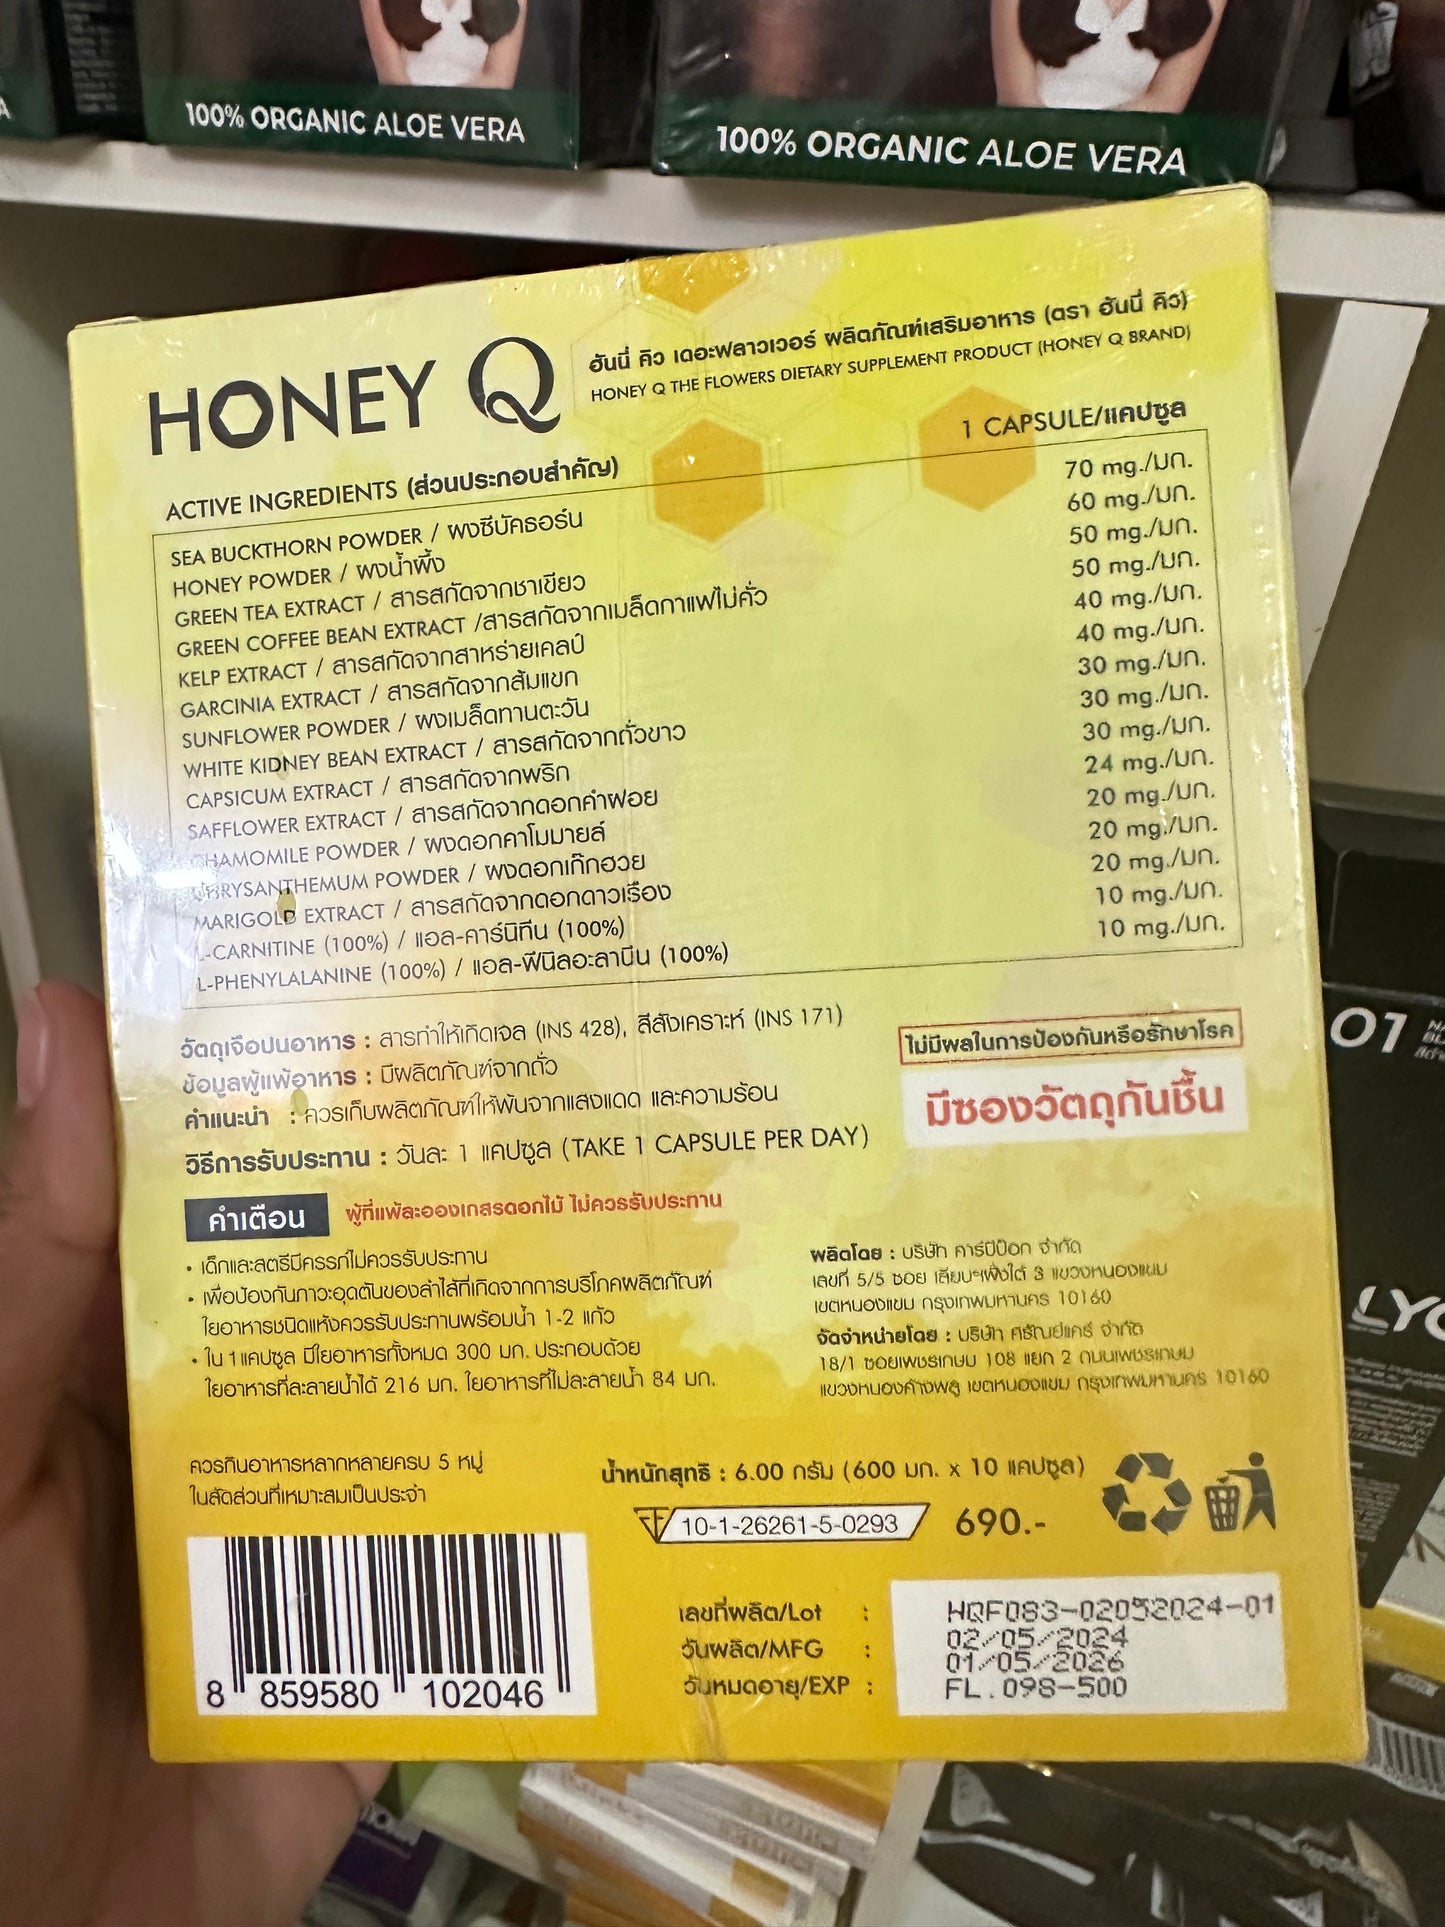 โปรโมชั่น Honey Q 8 กล่อง แถม 9 ชิ้น
เพียง $219 ส่งด่วนฟรีคะ🇦🇺